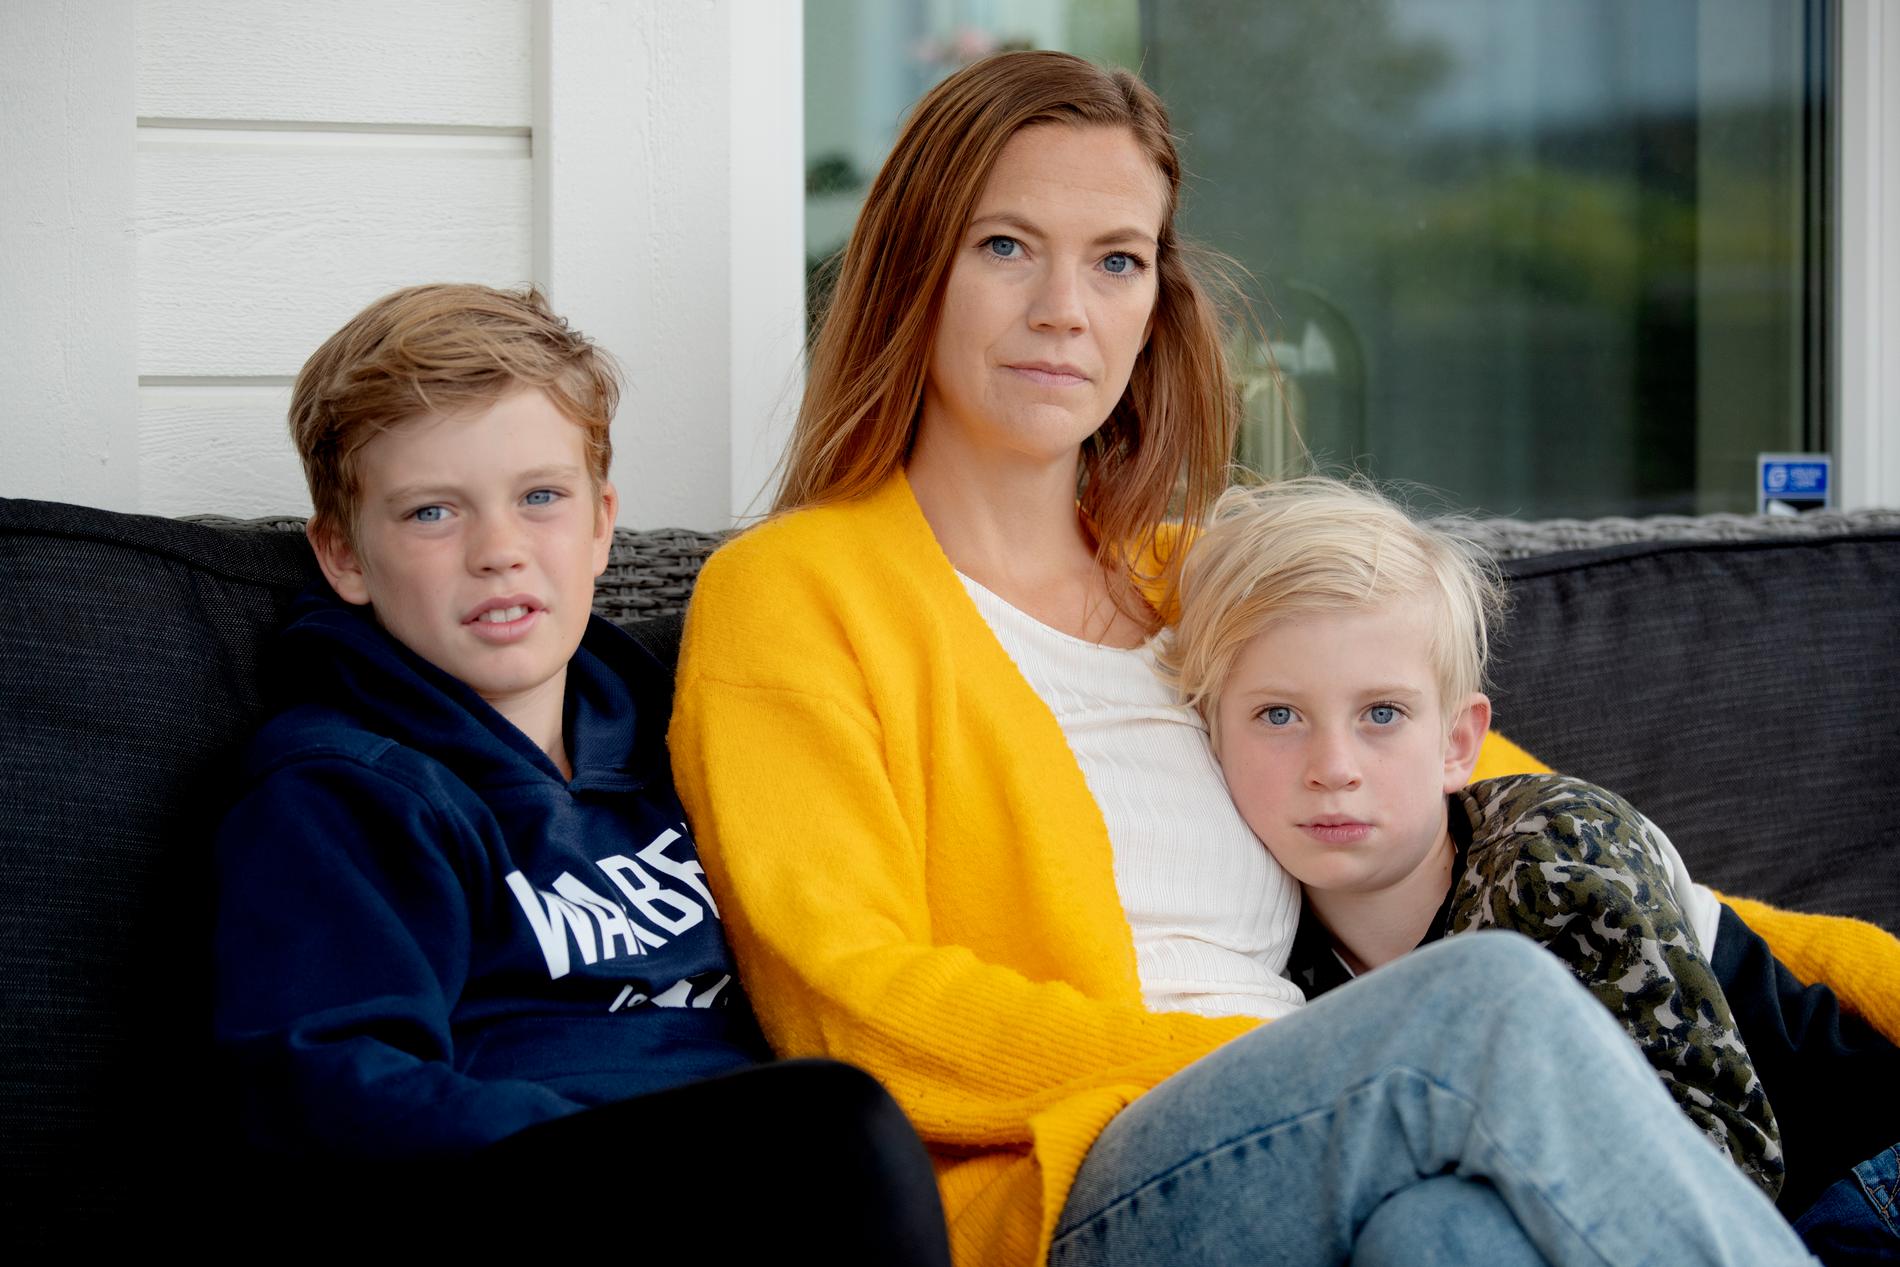 Helen Sigurdsson harvarit hemma med sin sjuårige son Charlie i sex månader utan att få någon ersättning från någon.